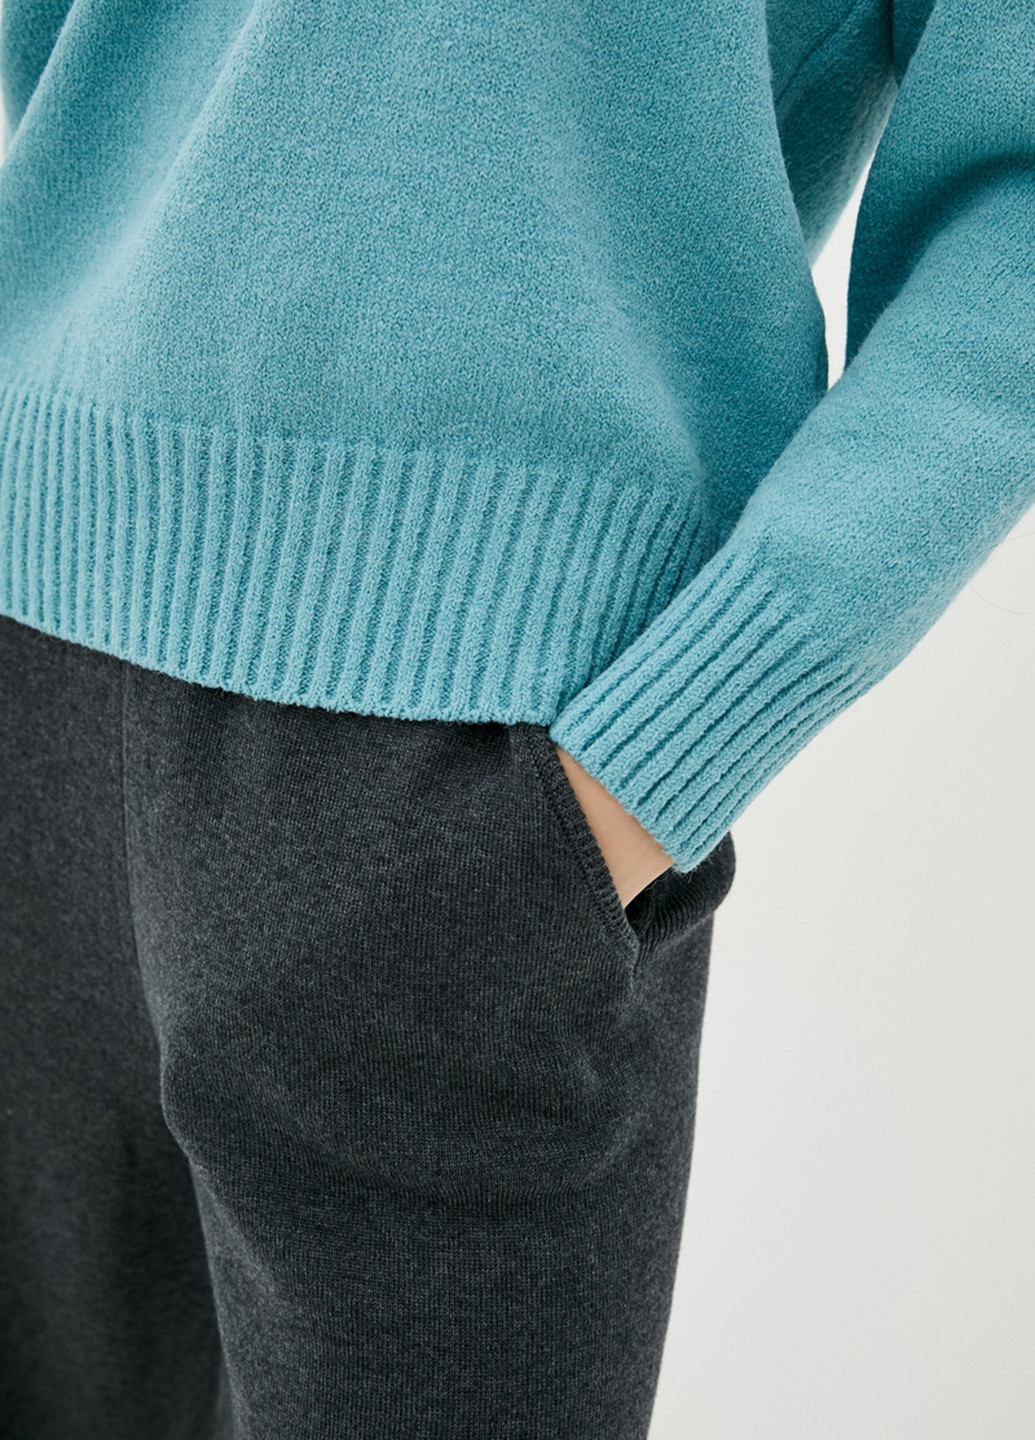 Мятный демисезонный пуловер пуловер Sewel